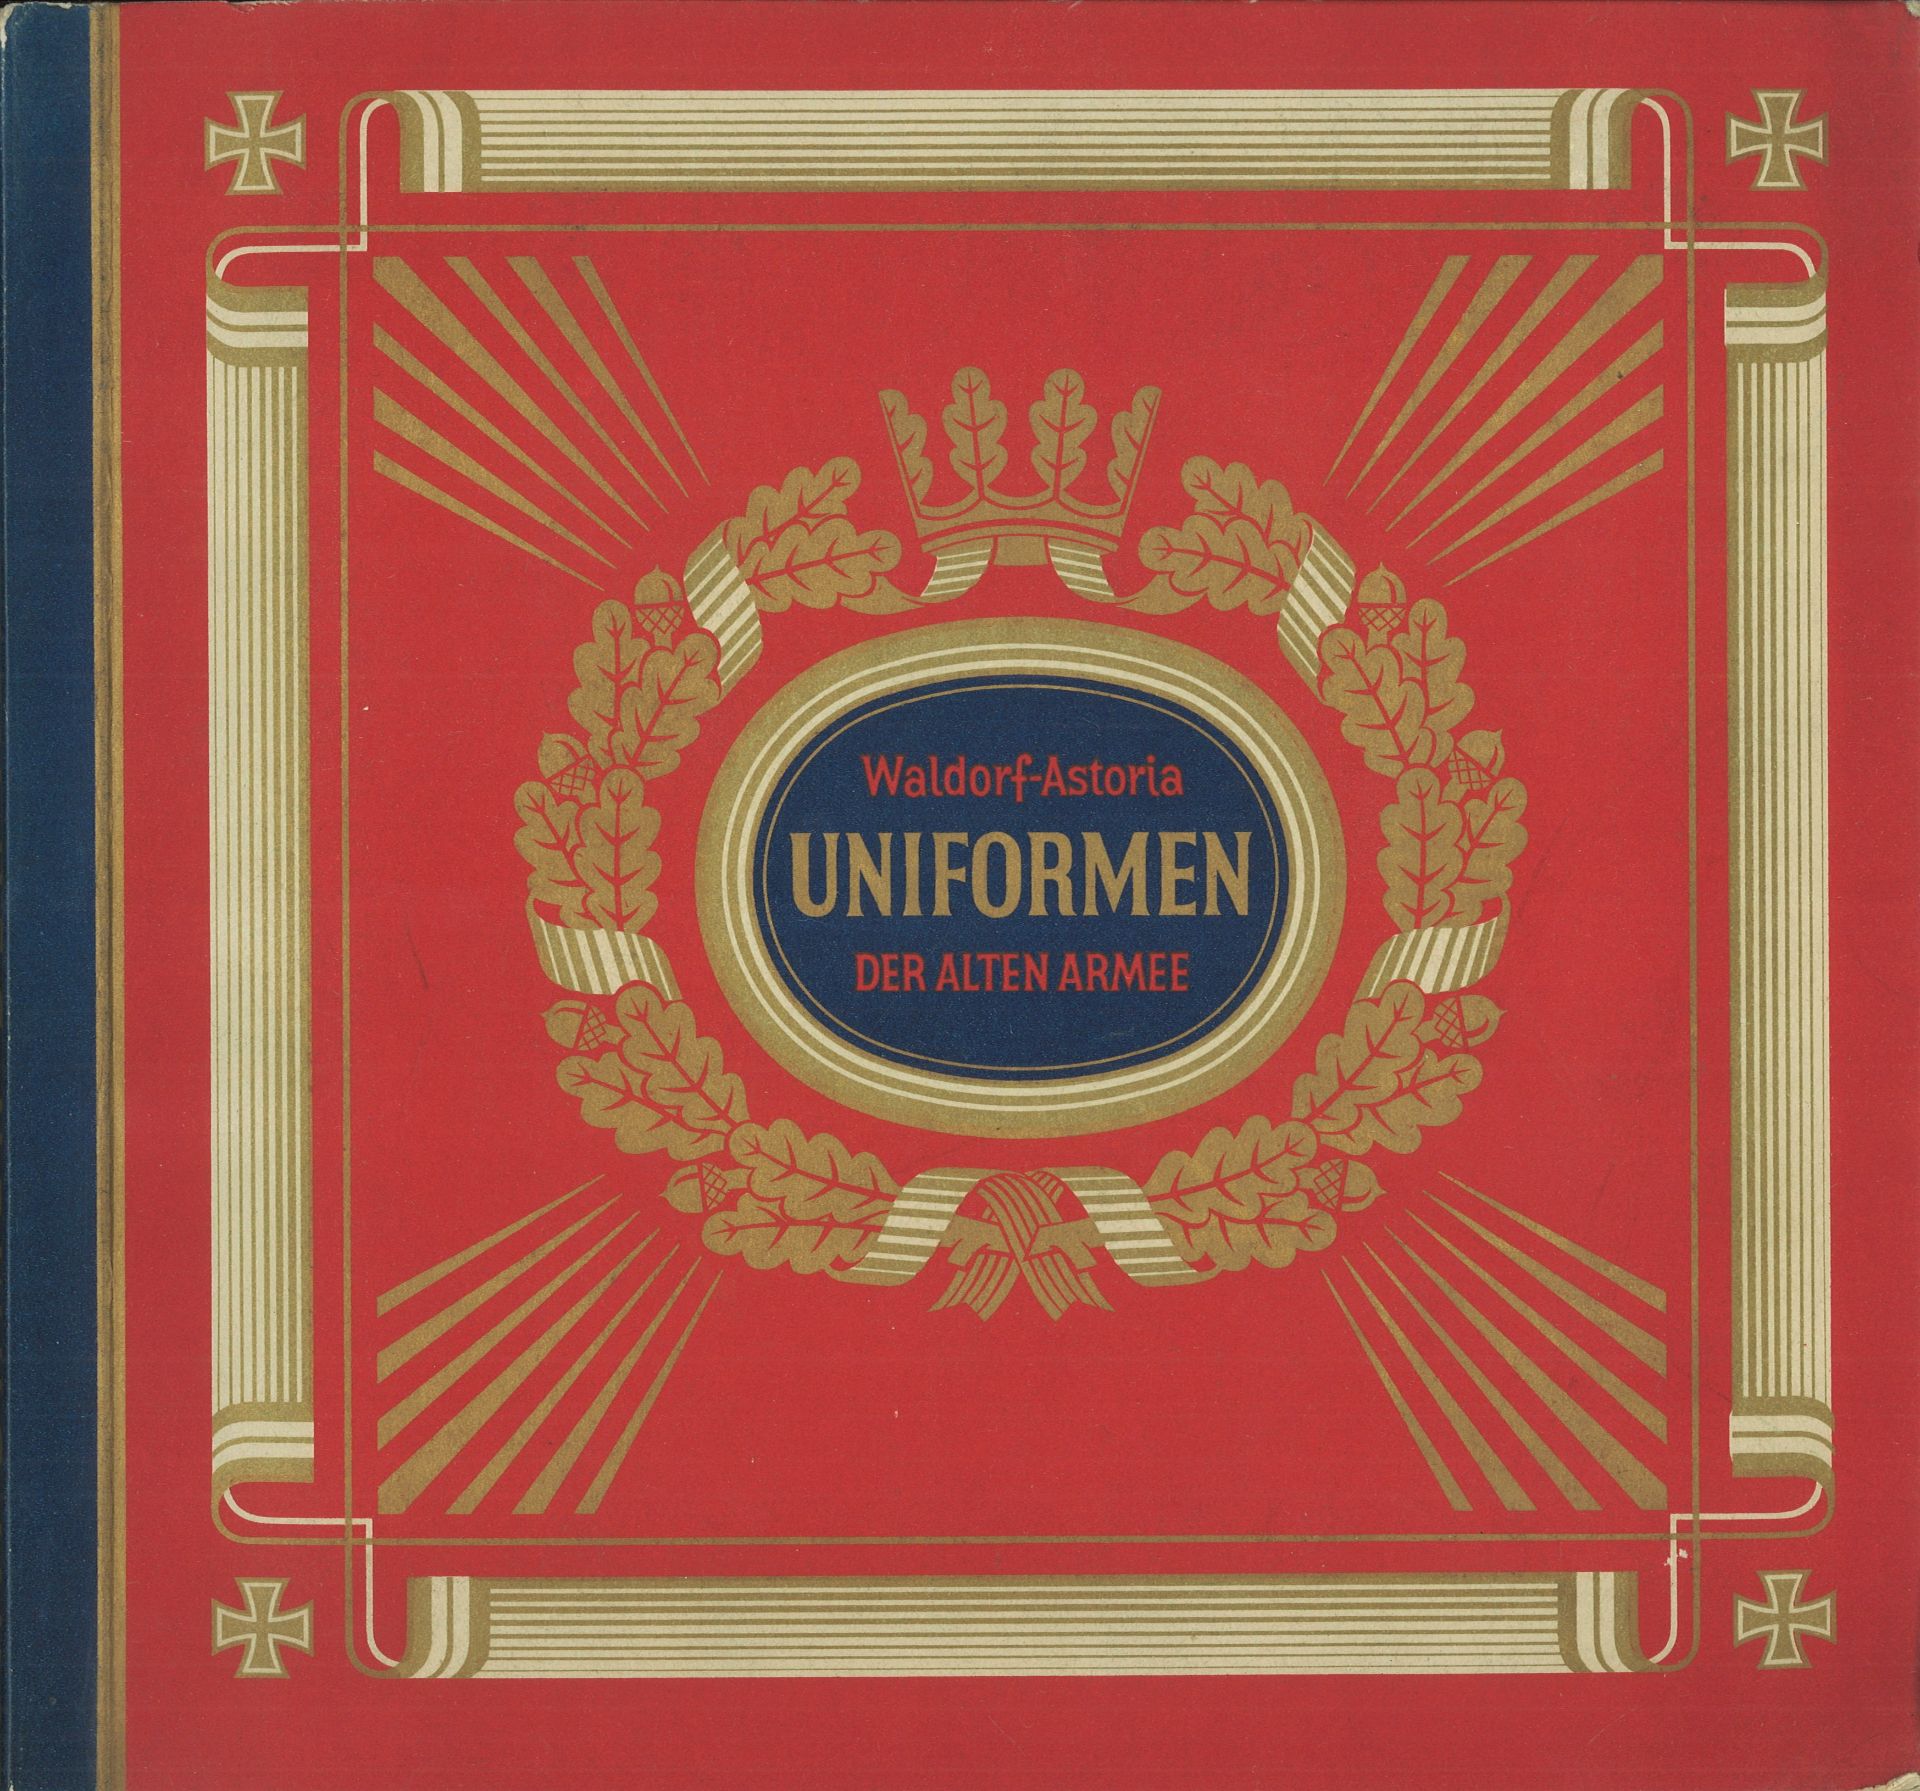 Sammelbilderalbum Waldorf-Astoria "Uniformen der alten Armee", mit 312 farb. Sammelbilder. farb.